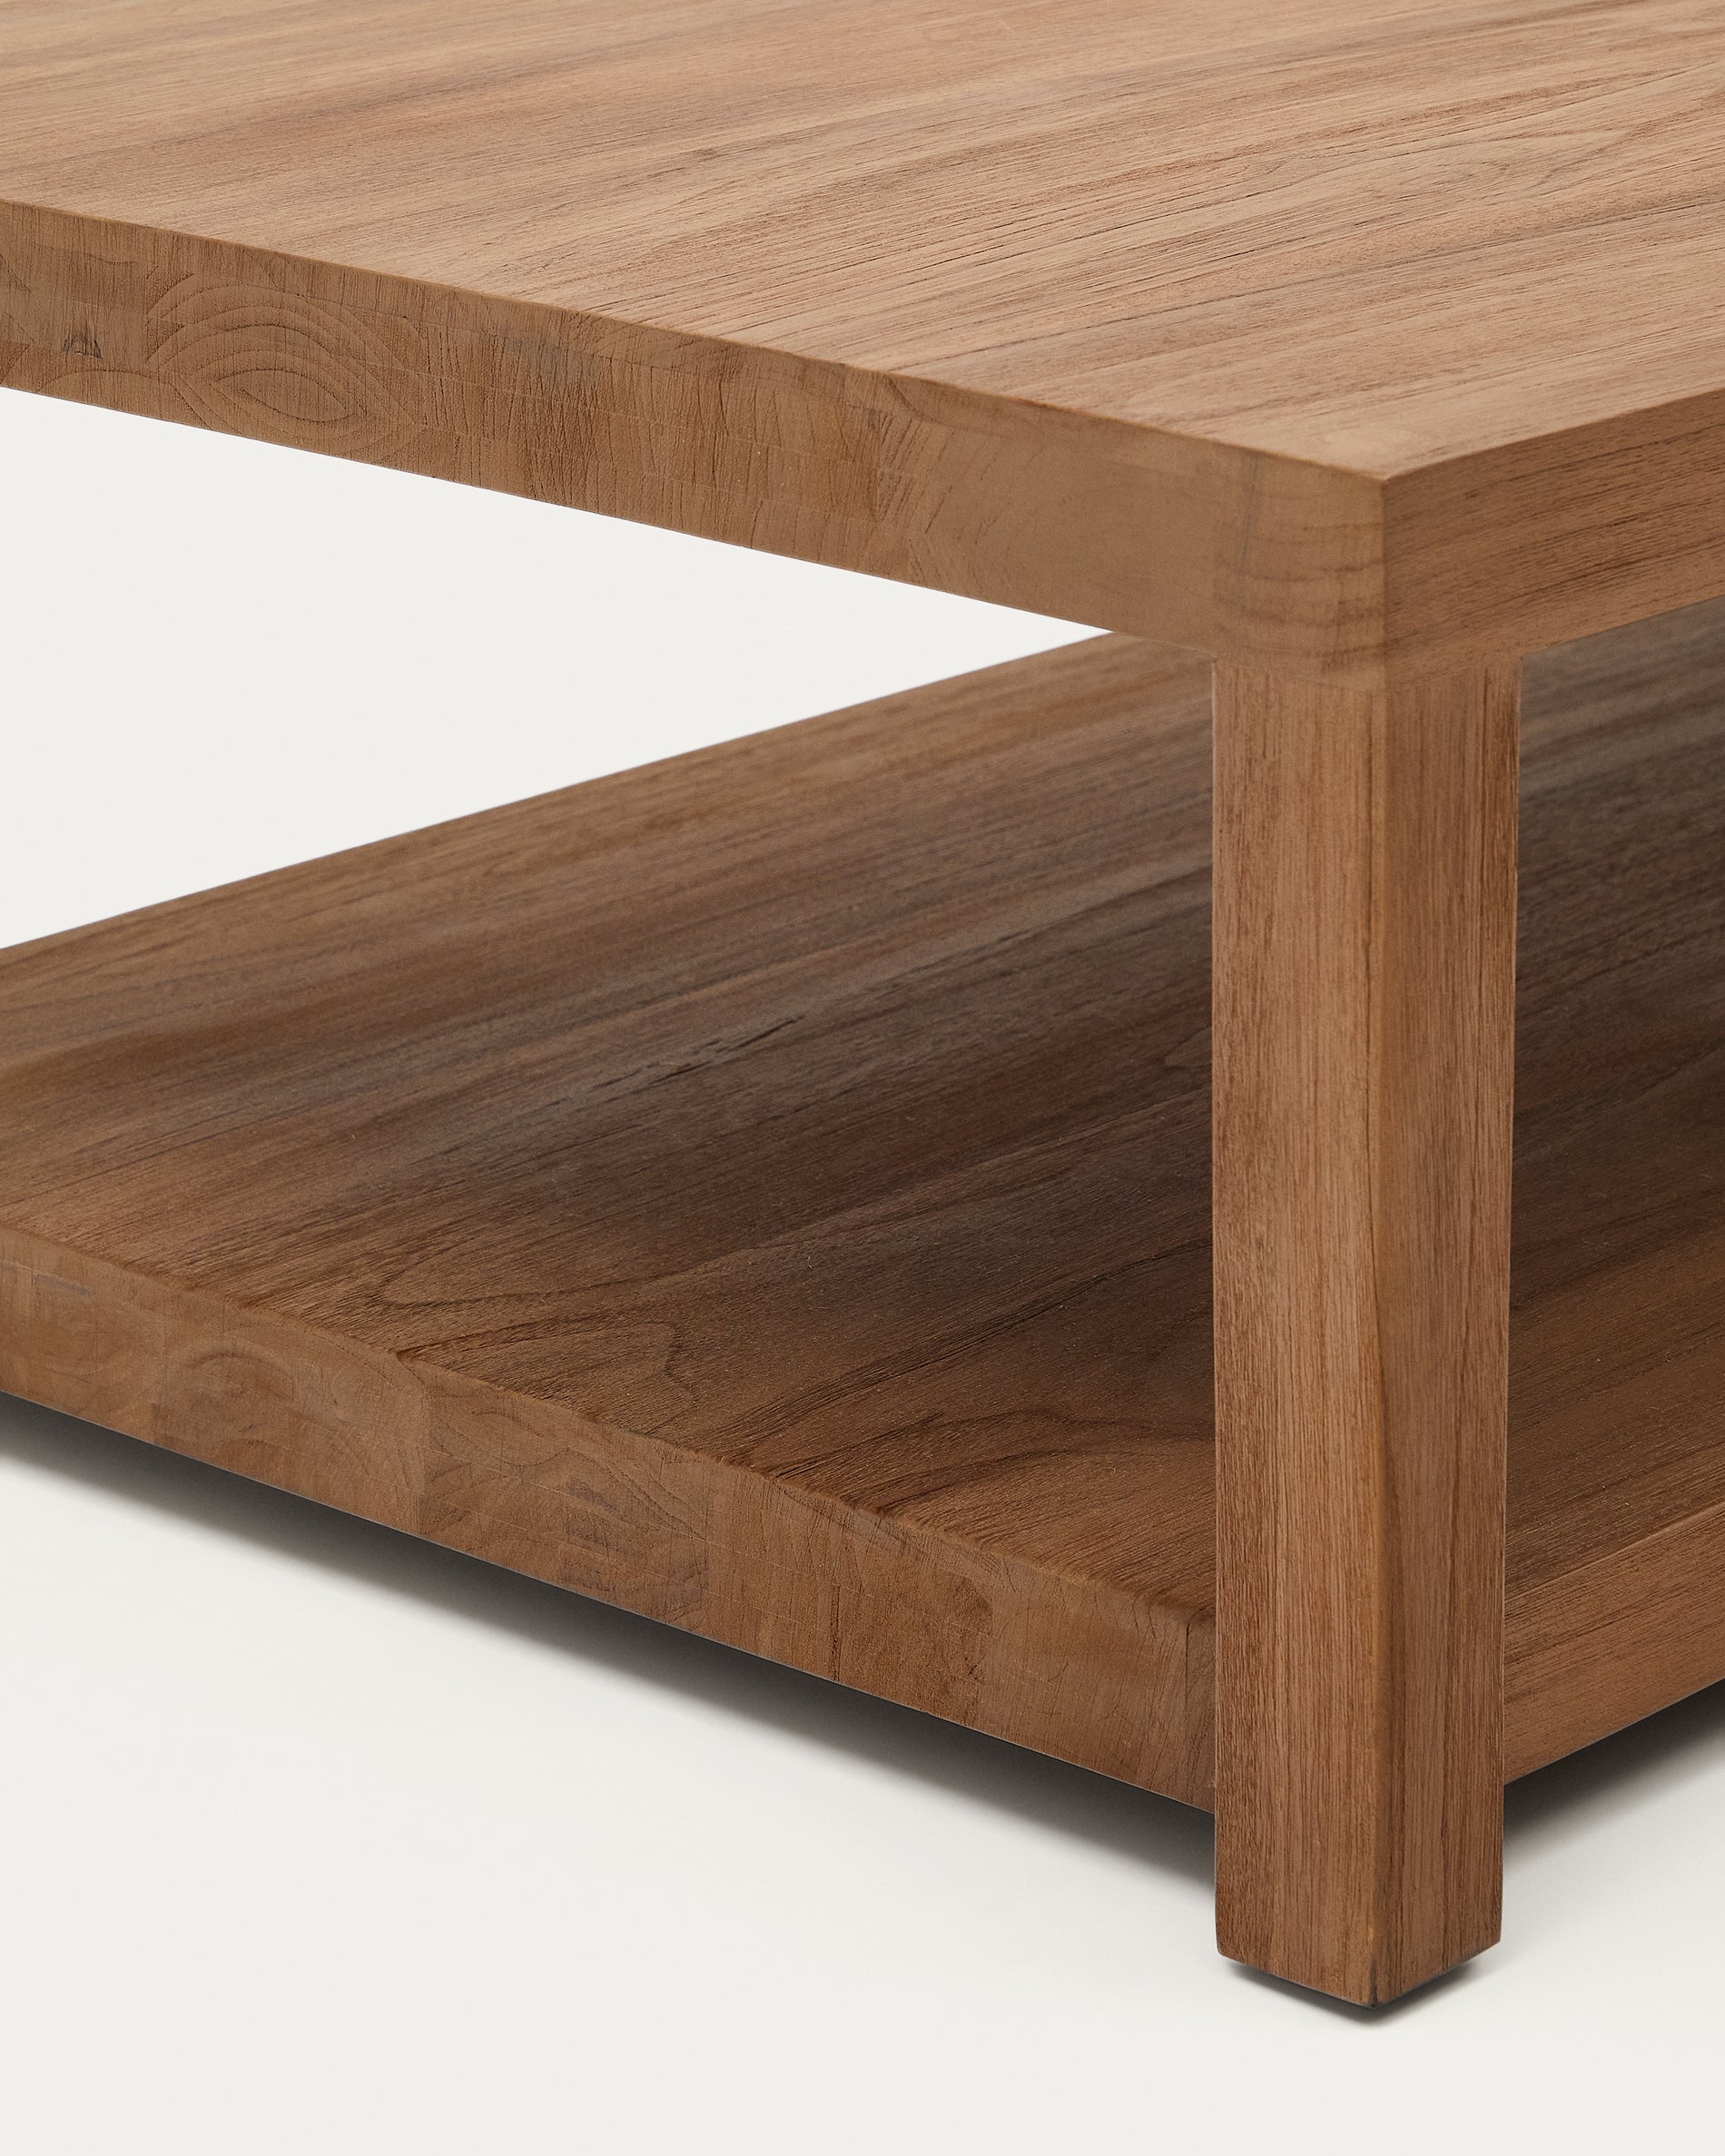 Sashi oldalsó asztal, készült masszív teakfából, 90 x 90 cm